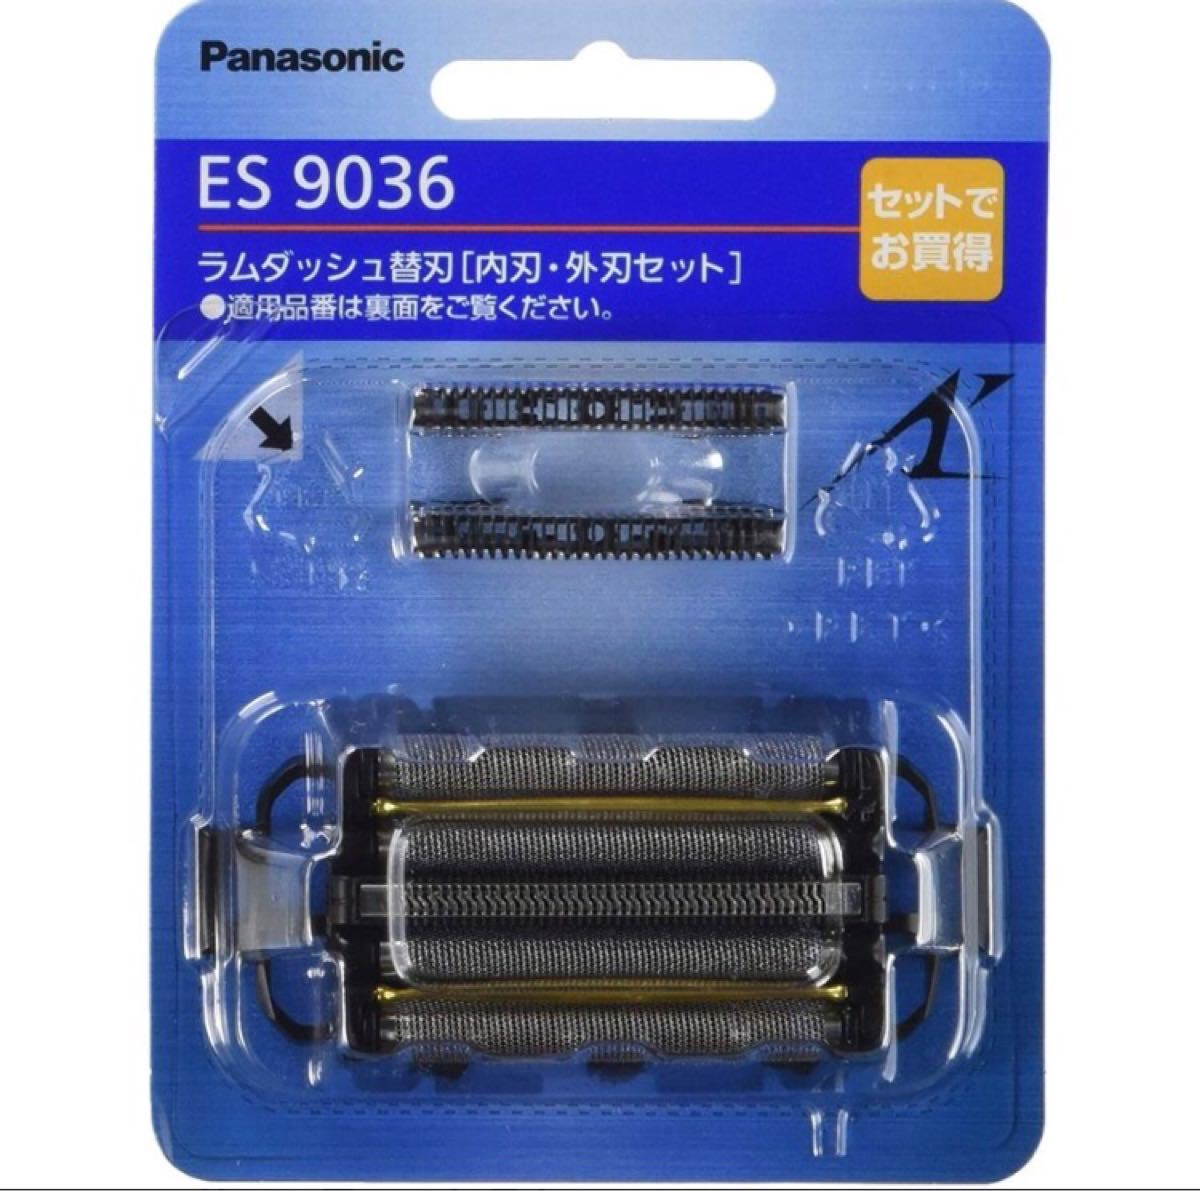 ■新品■ ラムダッシュ替刃[内刃・外刃セット] ES9036 メンズシェーバー 剃刀 パナソニック Panasonic